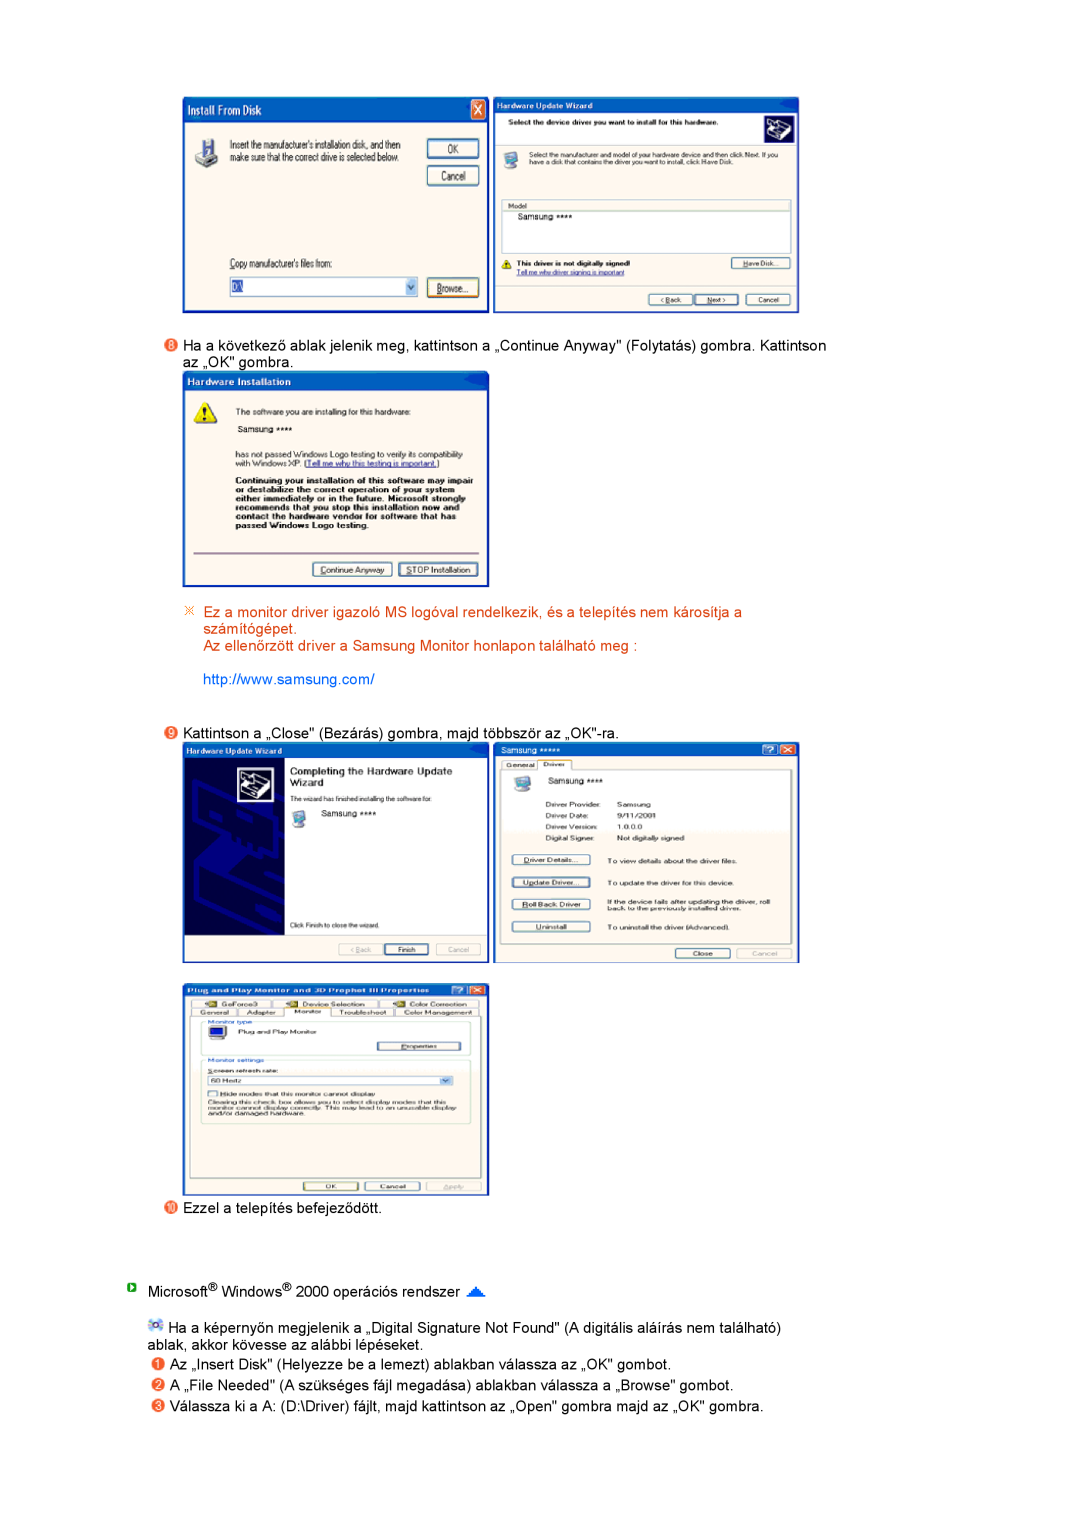 Samsung LS27HUBCBS/EDC, LS27HUBCB/EDC manual Az ellenőrzött driver a Samsung Monitor honlapon található meg 